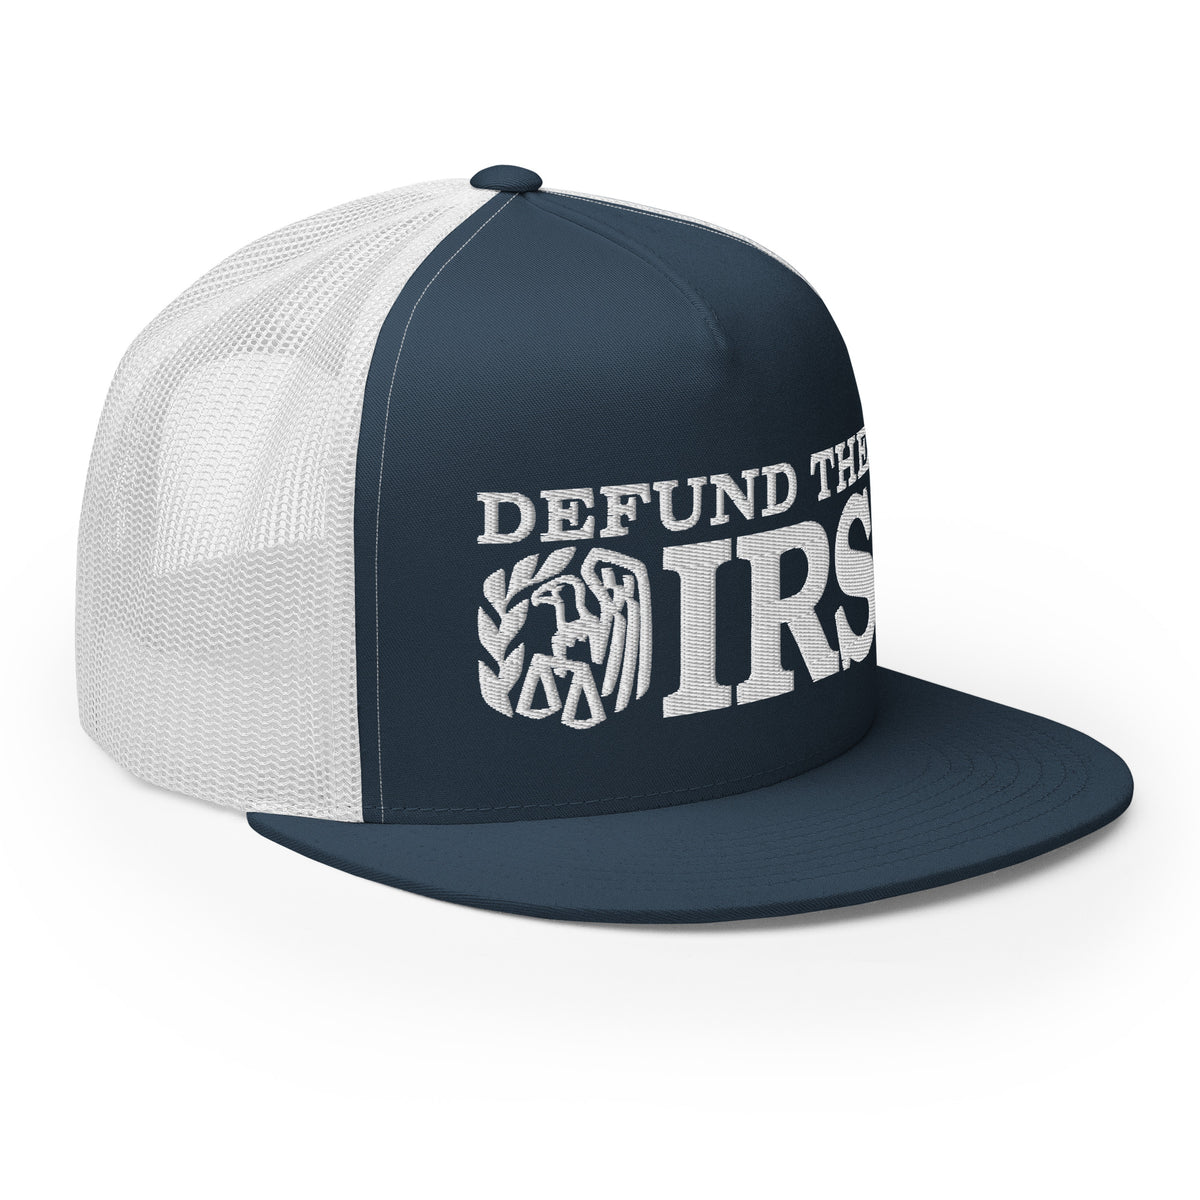 Defund the IRS Trucker Cap